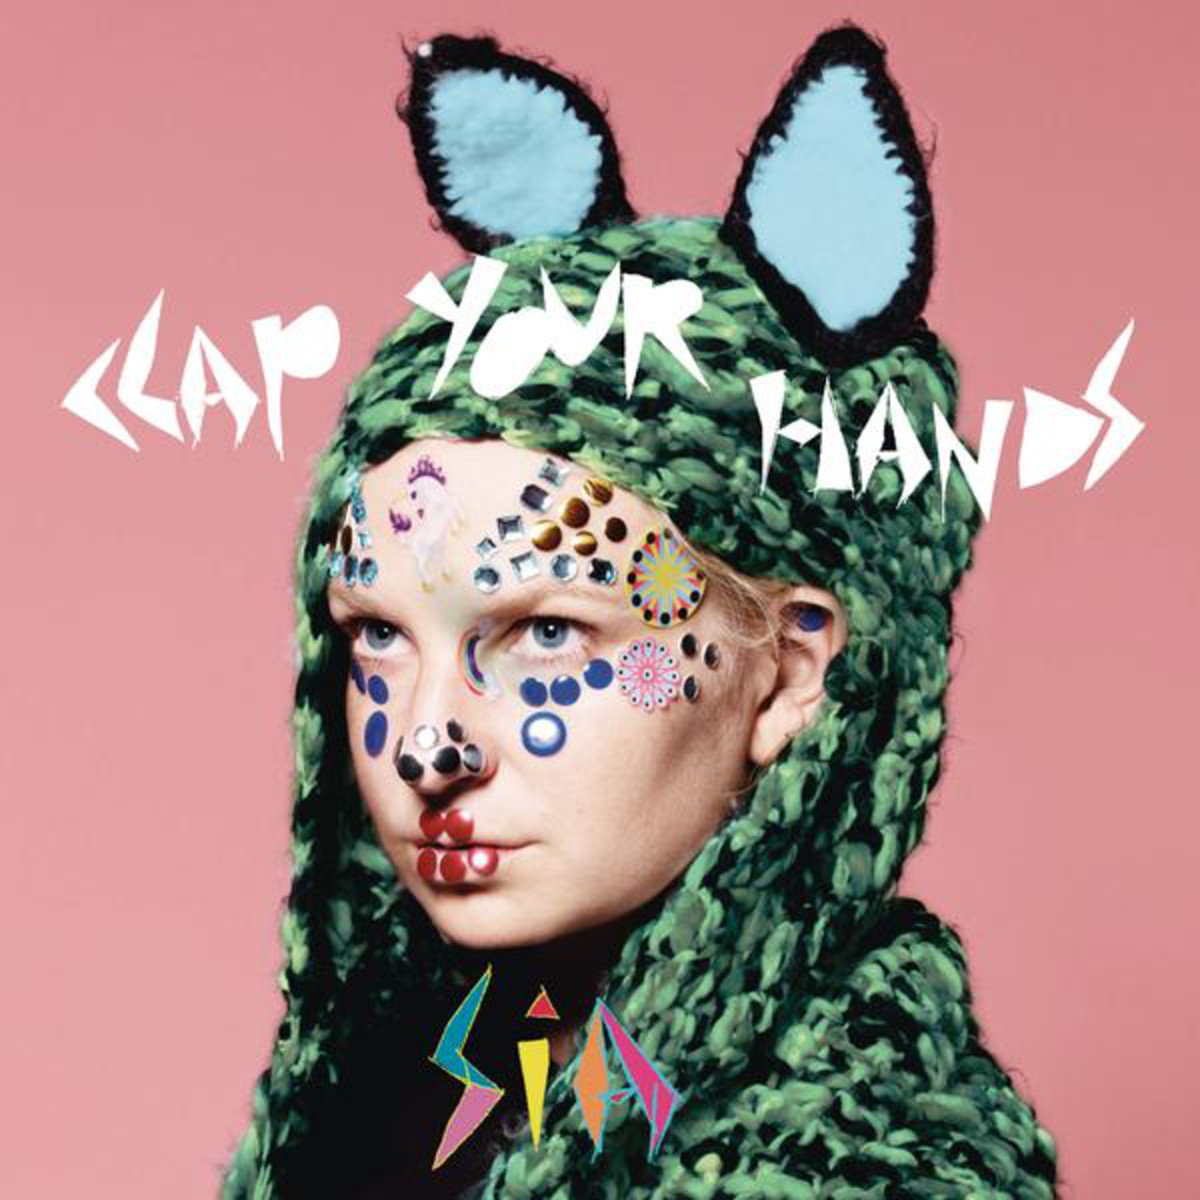 clap your hands (album version)